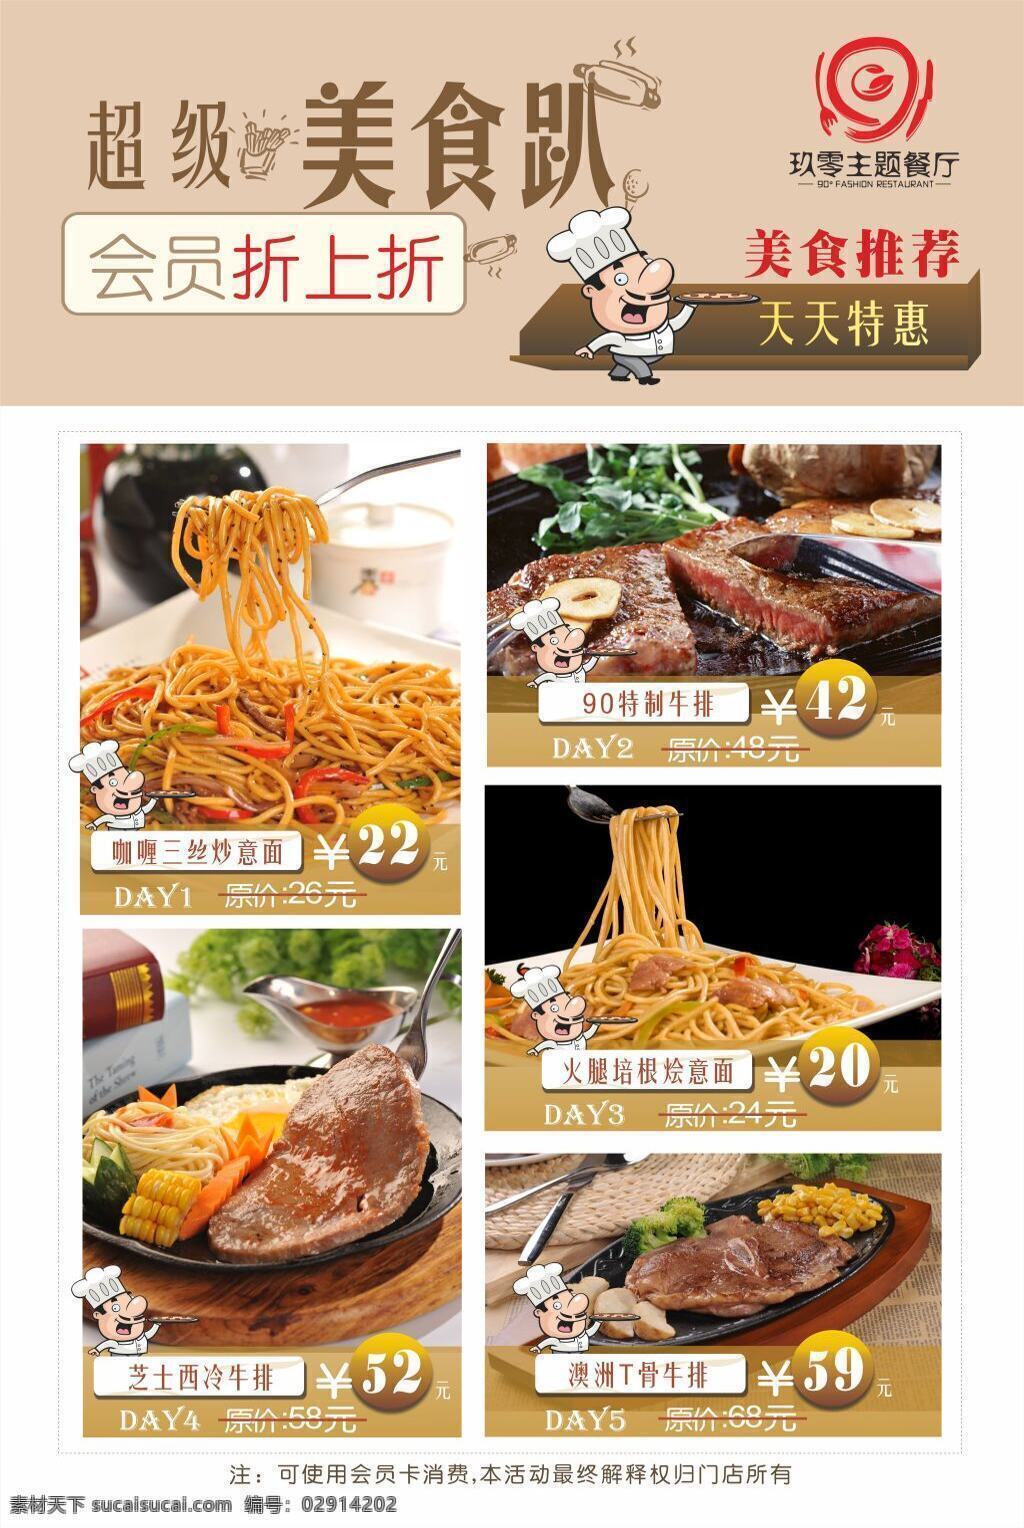 西餐海报主题 西餐 西餐厅 促销海报 美食 特色菜单